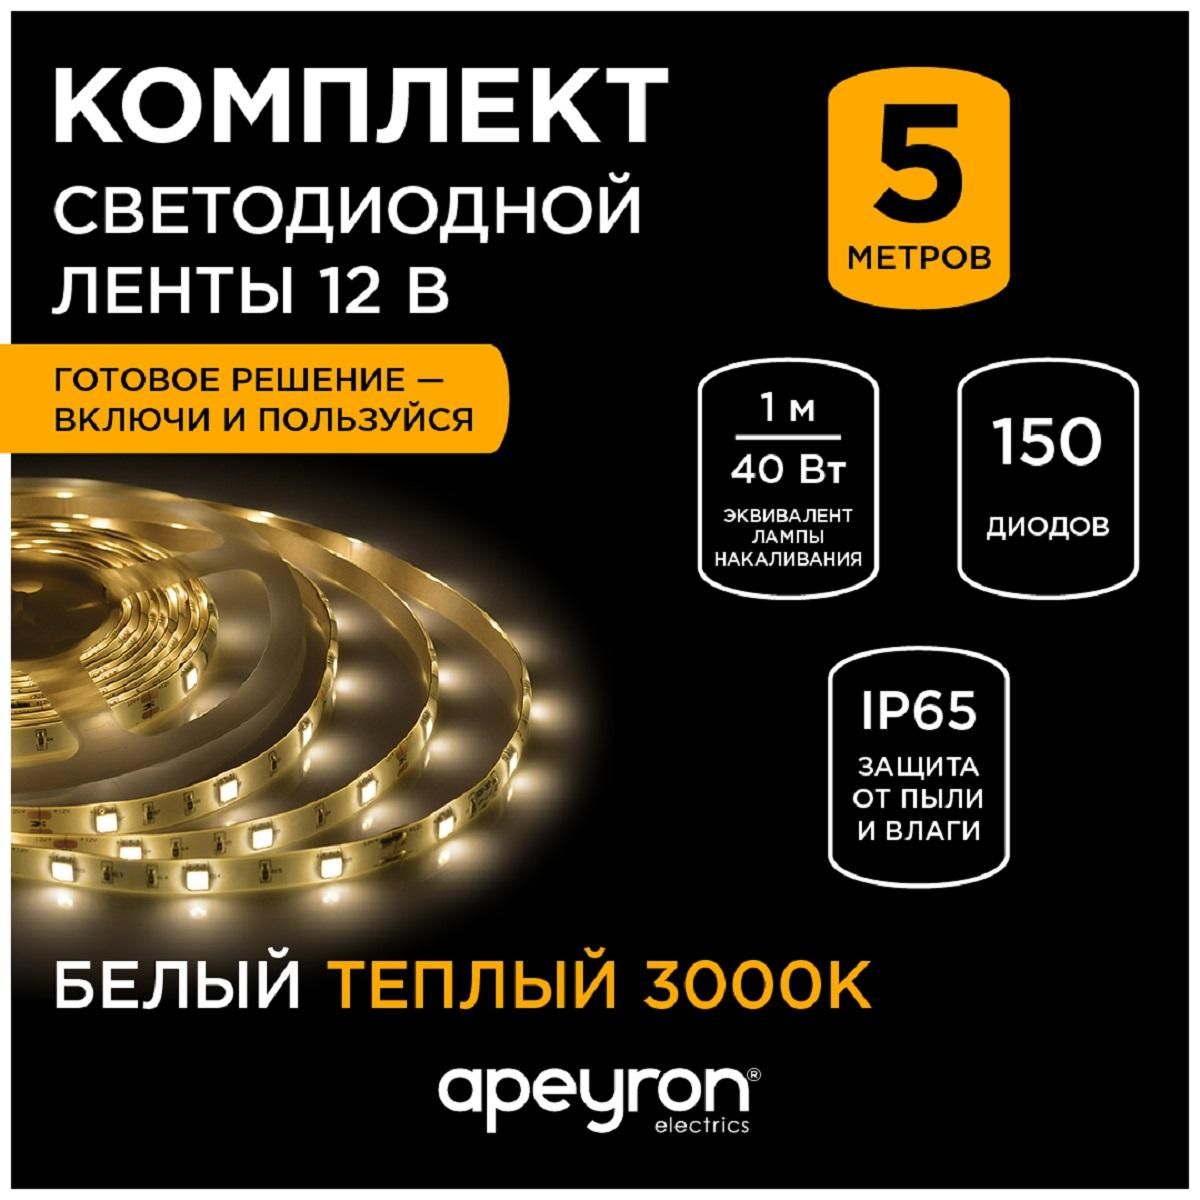 Комплект светодиодной ленты smd5050 30д/м 12В 3000K IP65 5м Apeyron - Фото 8